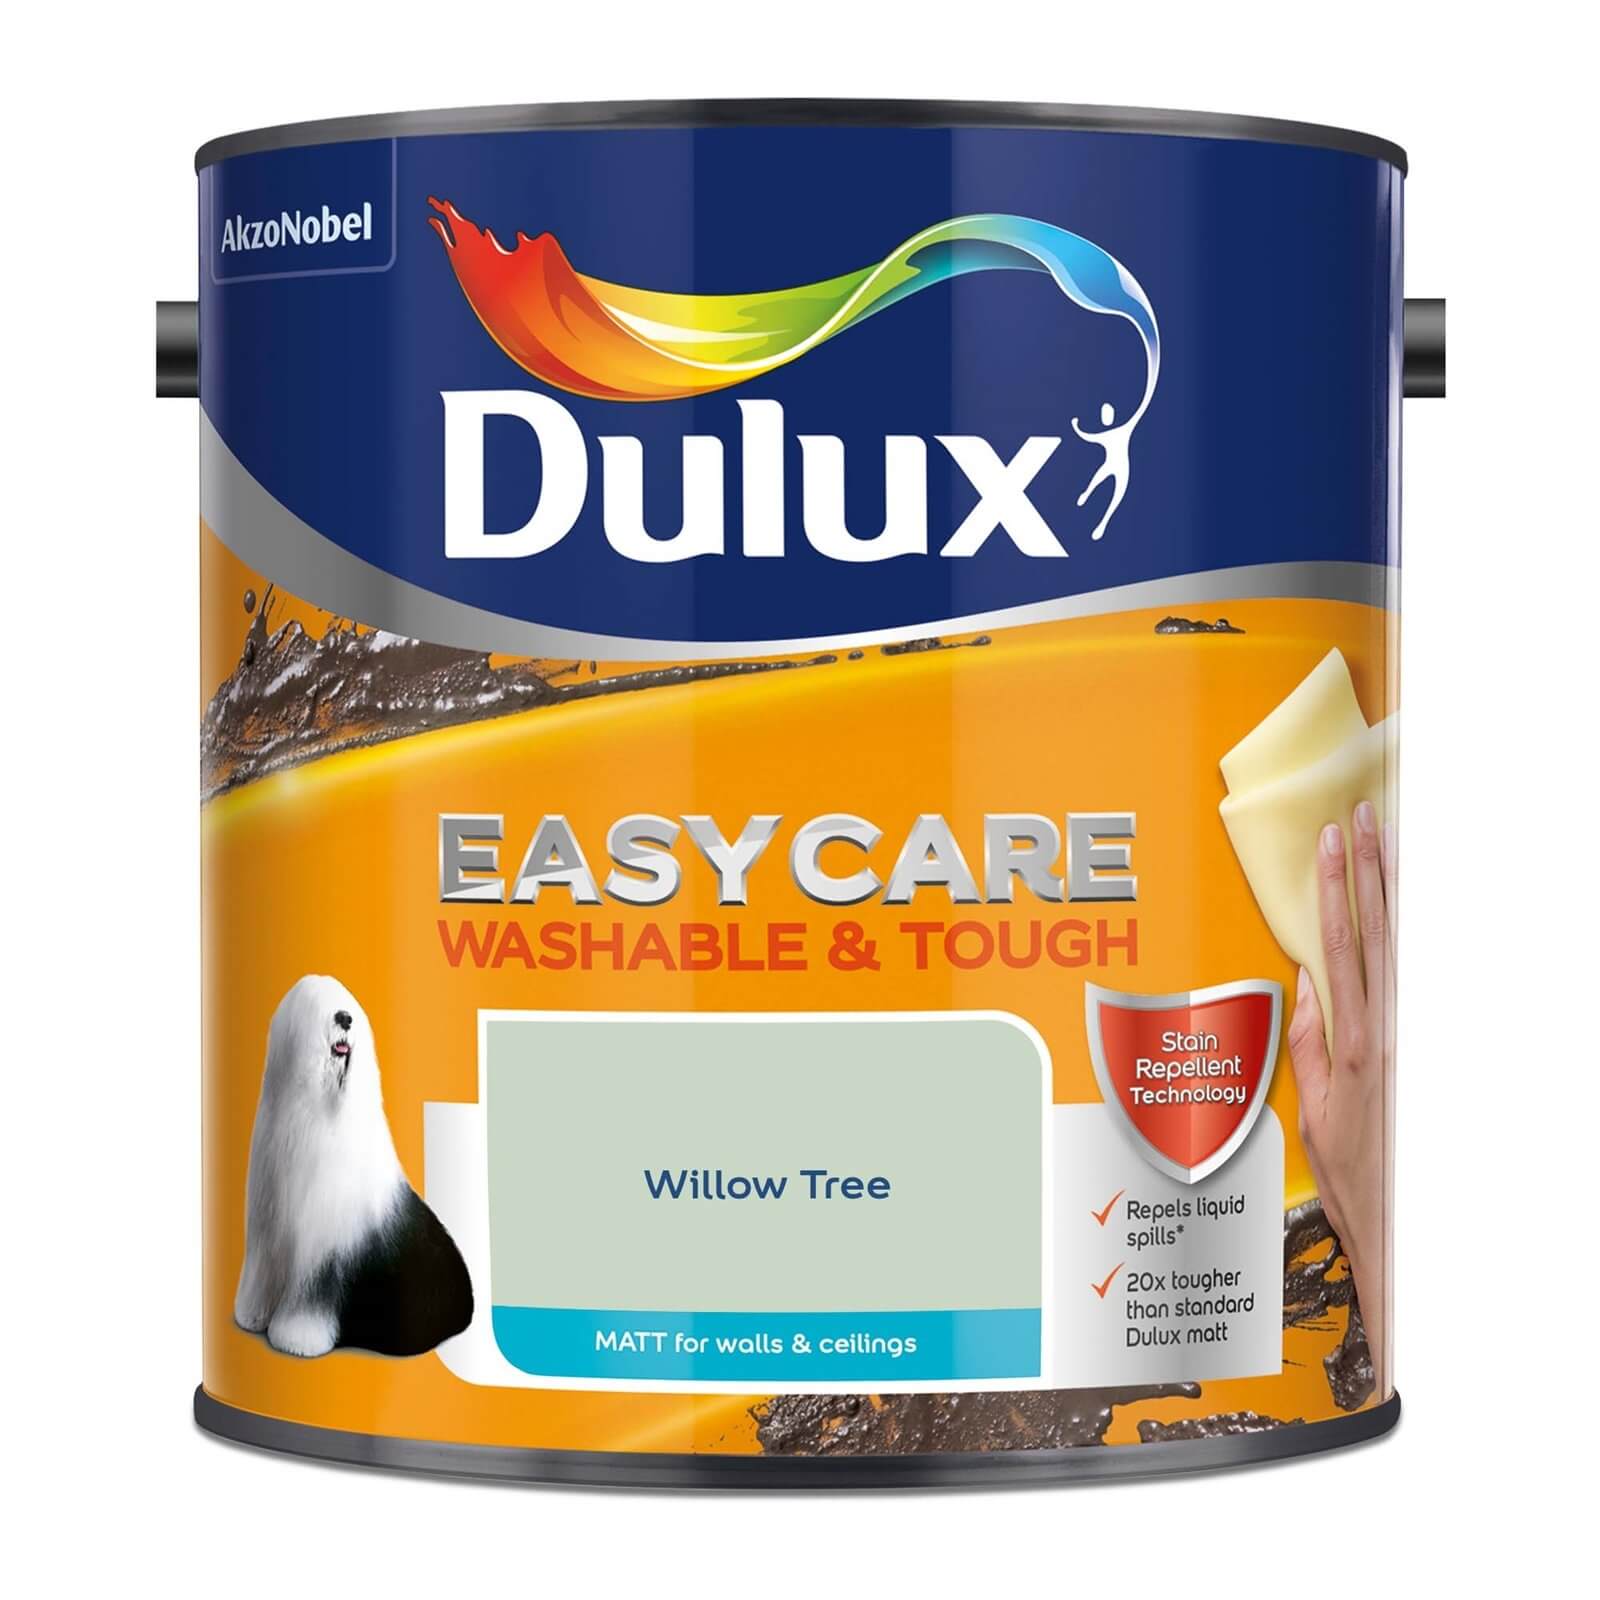 Dulux Easycare Washable & Tough Matt Paint Willow Tree - 2.5L